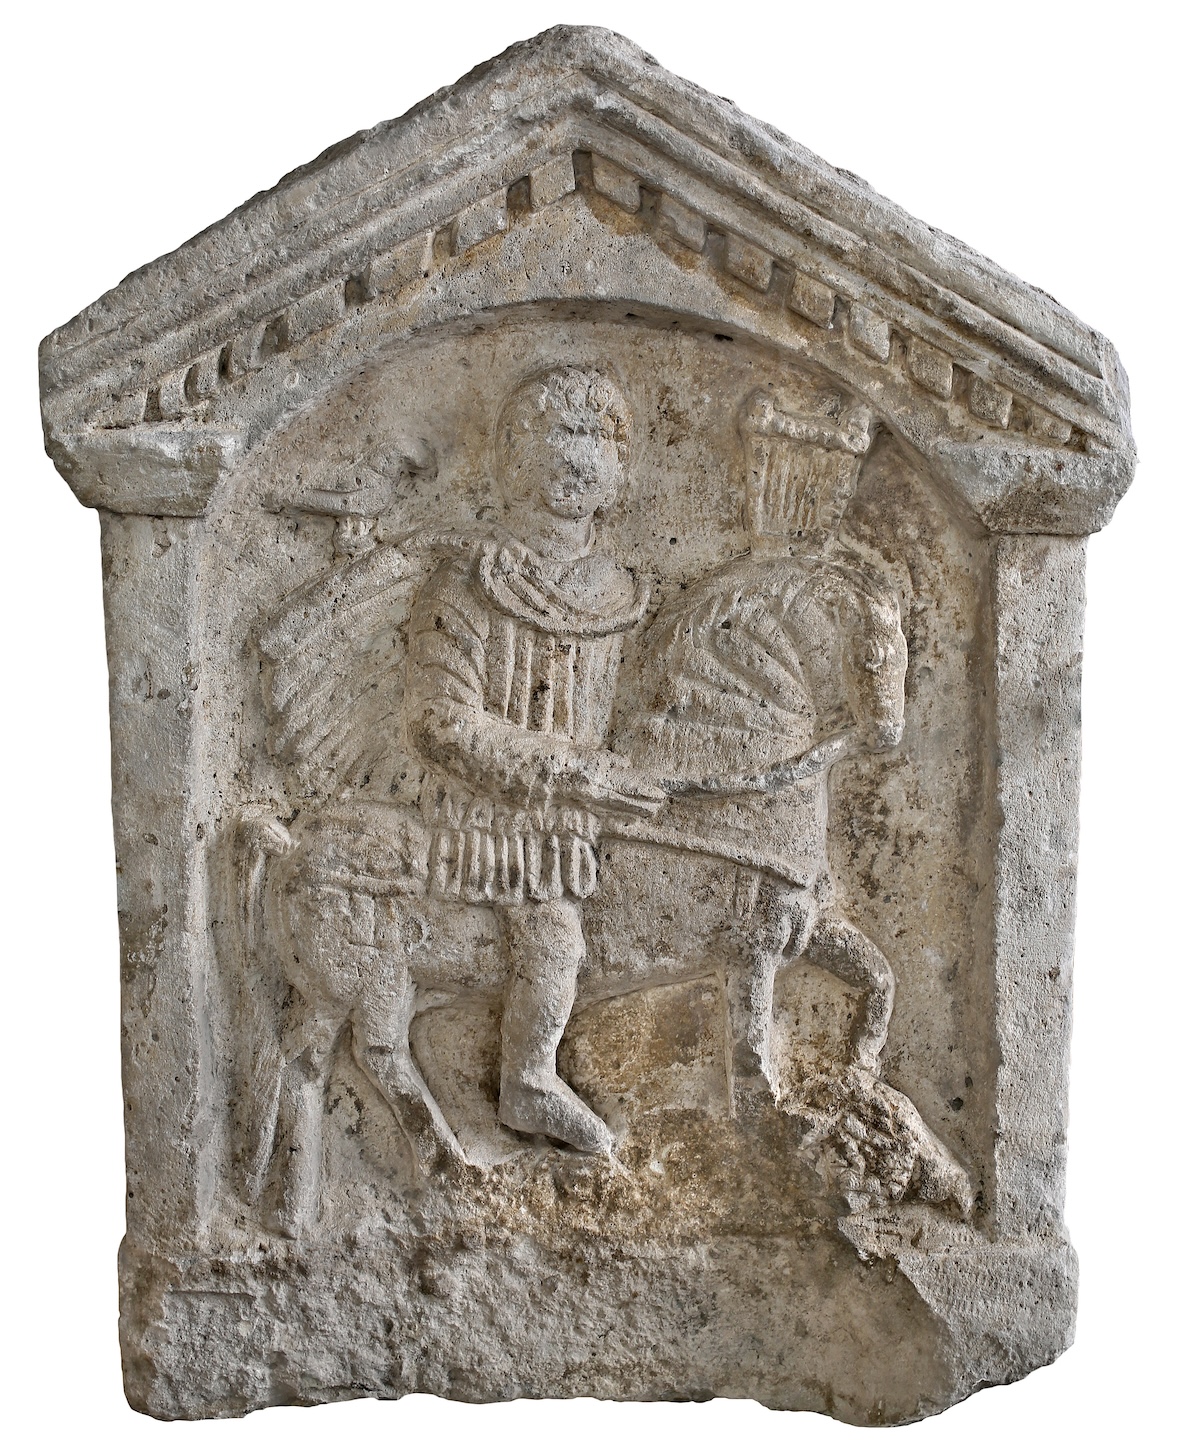 A római kori kőtár anyagában síremlékek, a temetkezési, vallási élettel kapcsolatos tárgyak is láthatók . Fotó: MNIT